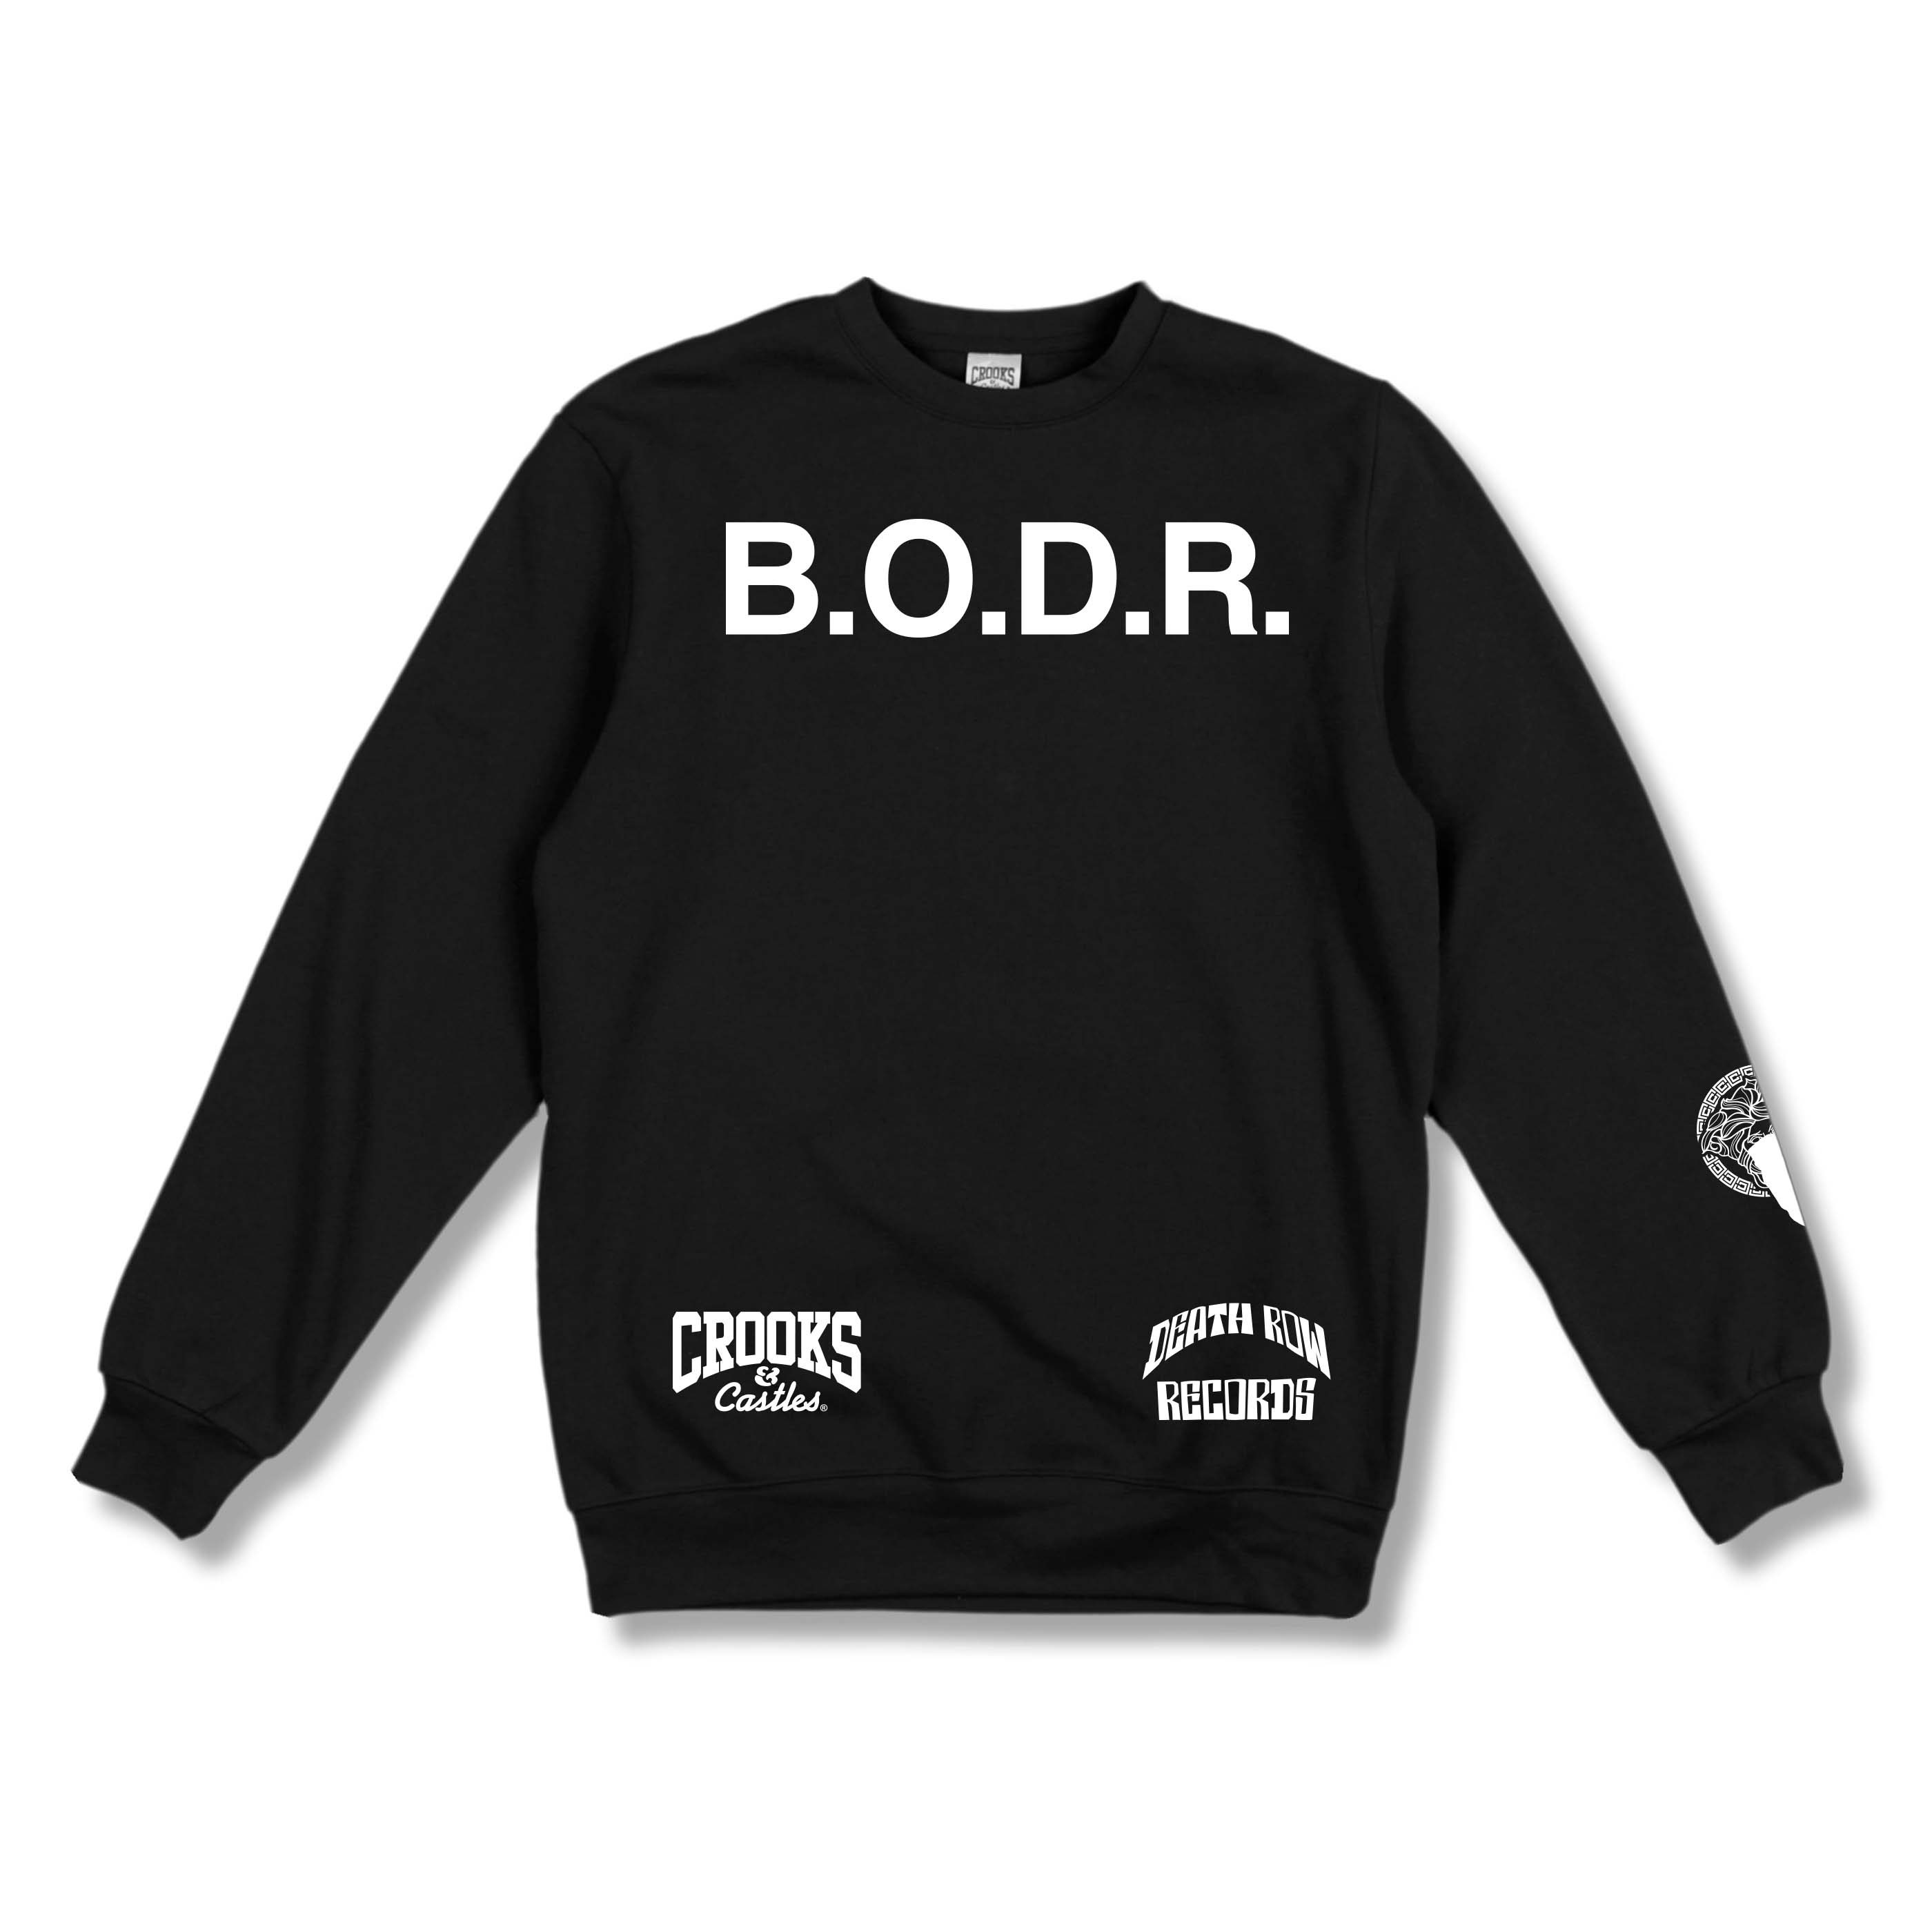 B.O.D.R. x Crooks Sweatshirt